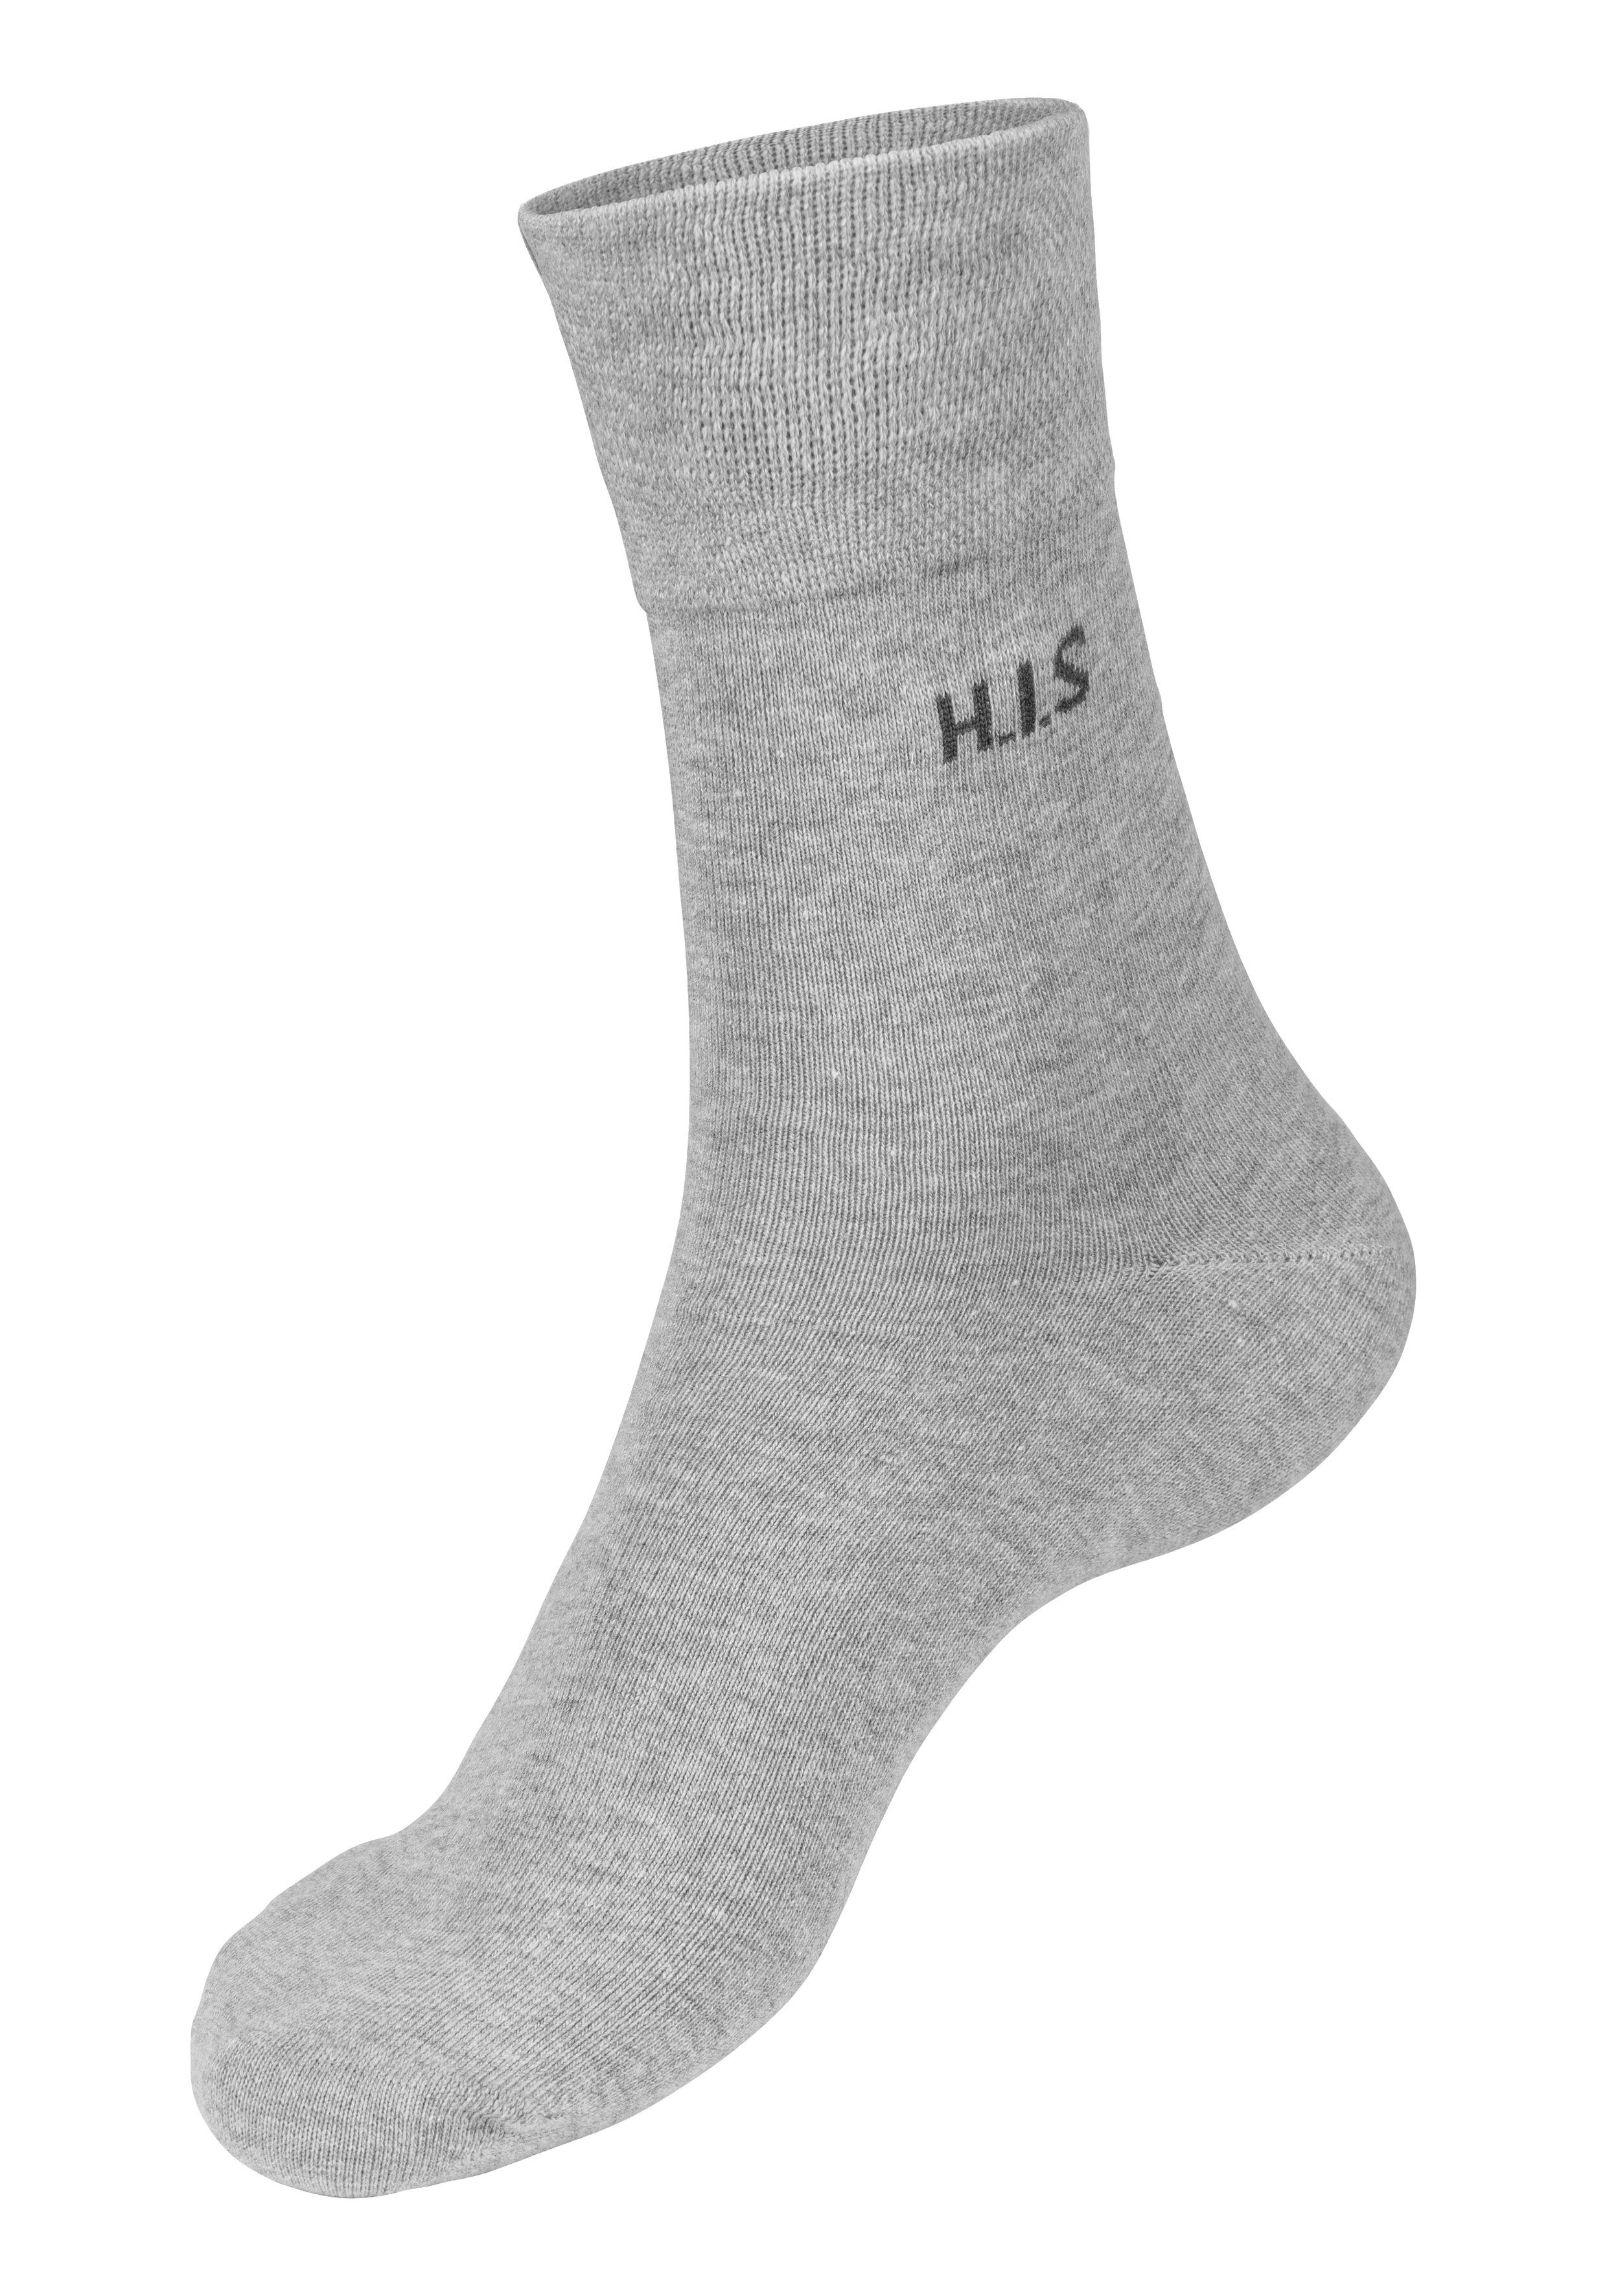 4x H.I.S Gummi Socken 4x 4x anthrazit-meliert, grau-meliert ohne (Packung, 12-Paar) einschneidendes schwarz,